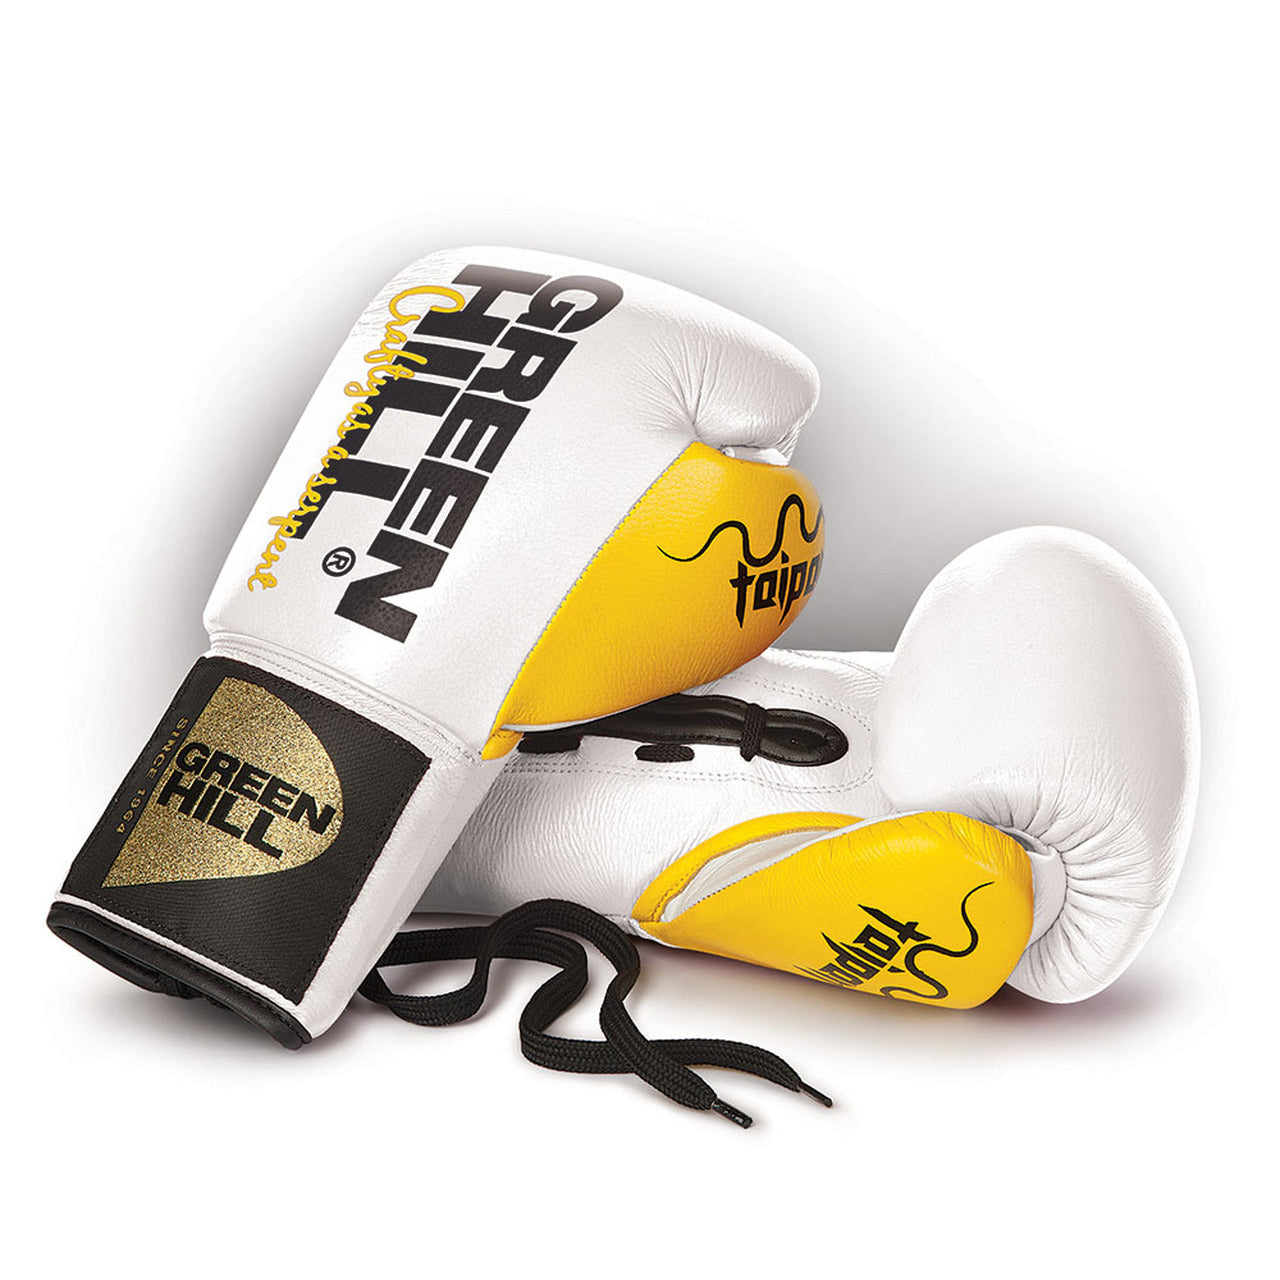 Boxing Gloves “TAIPAN”